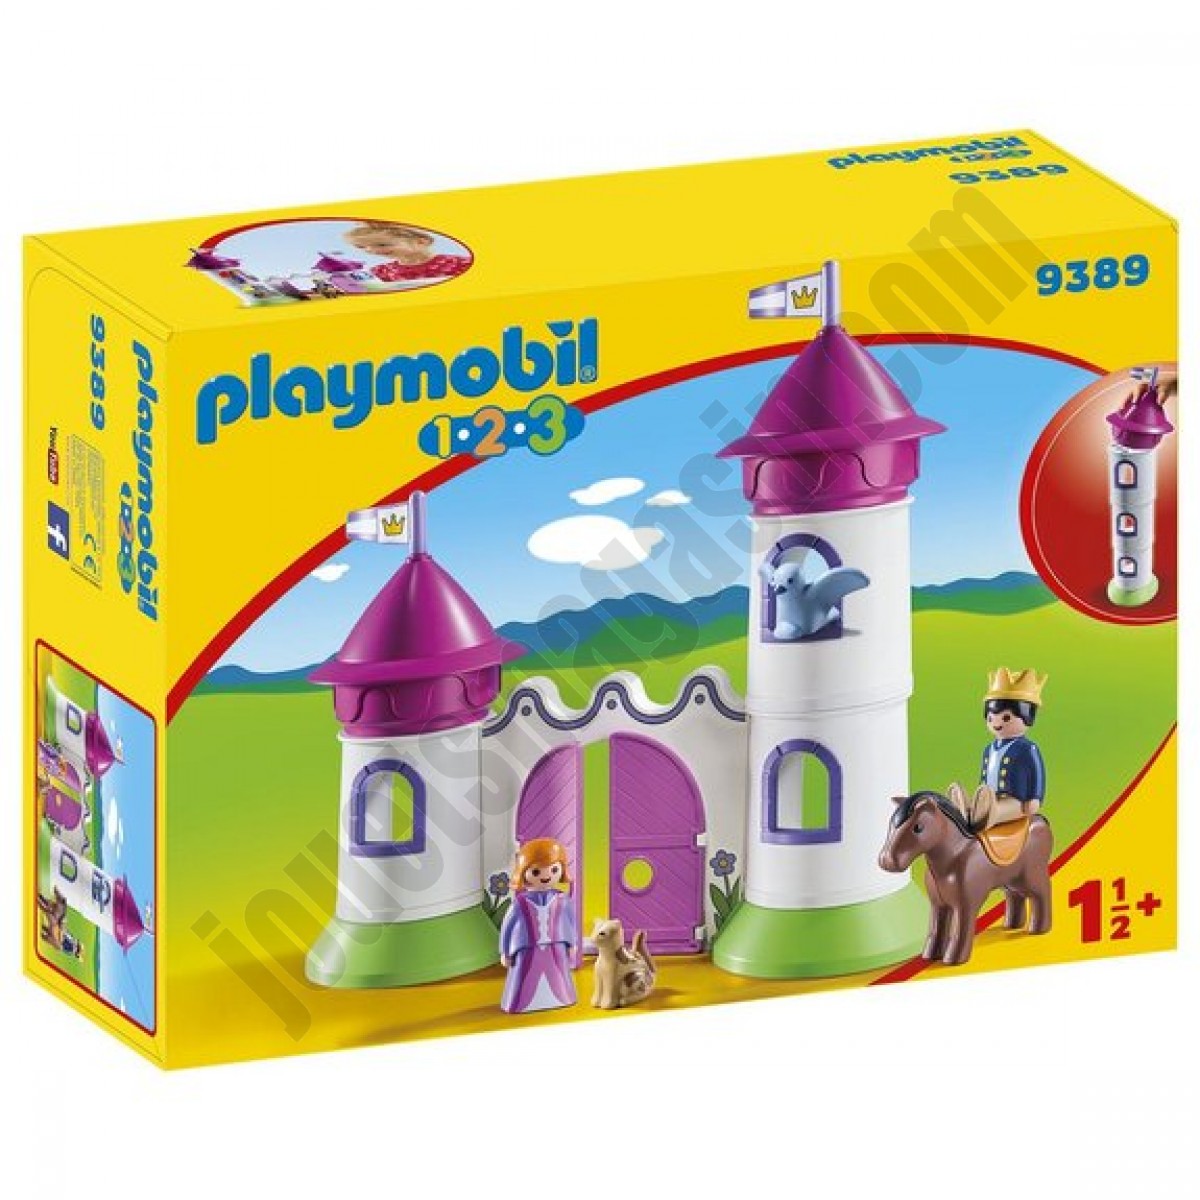 Château de princesse avec tours empilables Playmobil 1.2.3 ◆◆◆ Nouveau - Château de princesse avec tours empilables Playmobil 1.2.3 ◆◆◆ Nouveau